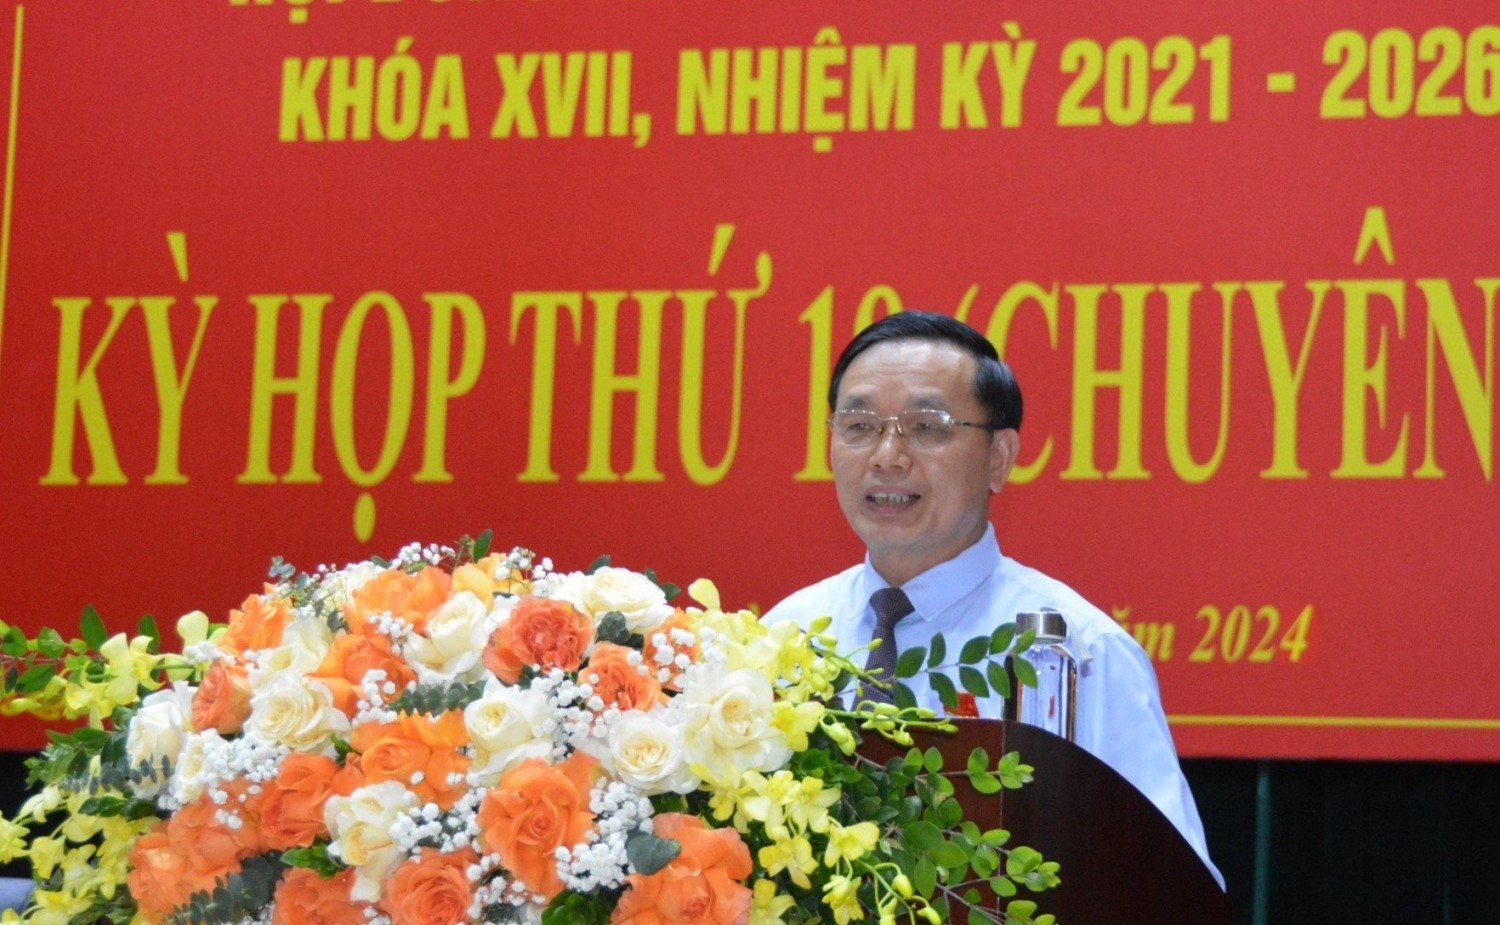 Phó Bí thư Thường trực Tỉnh ủy, Chủ tịch HĐND tỉnh Triệu Đình Lê phát biểu khai mạc kỳ họp